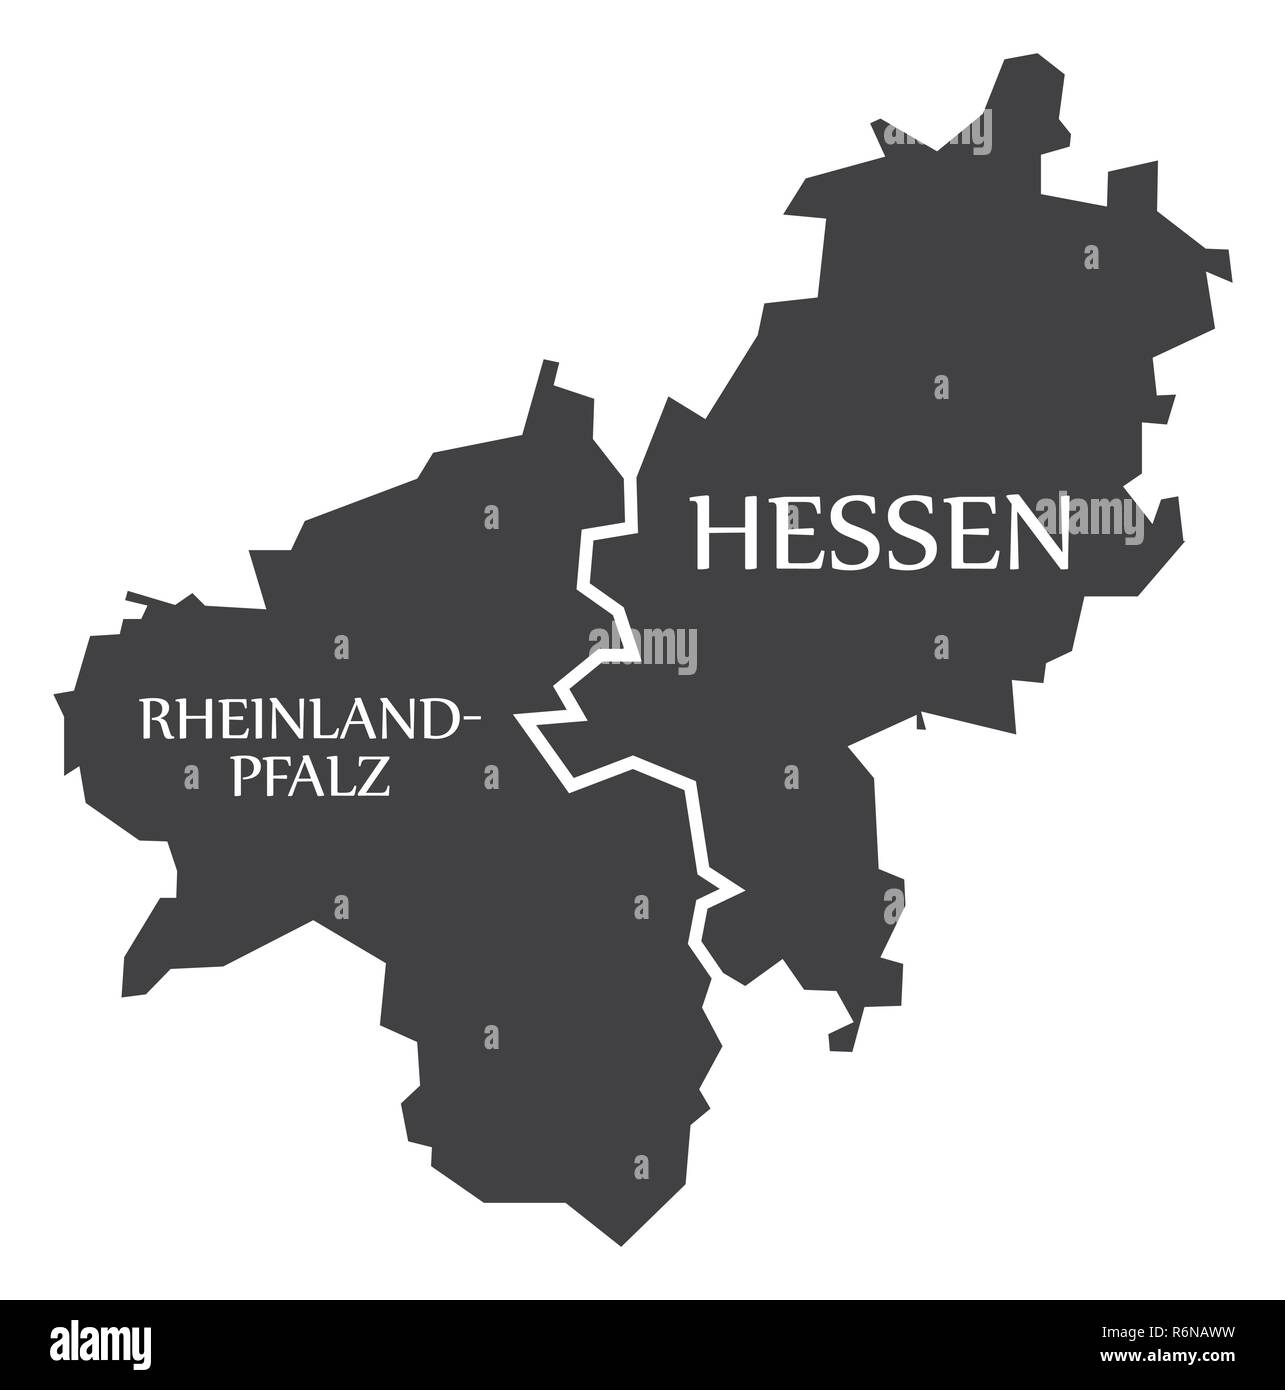 Rheinland-pfalz - Hesse états fédéraux carte de l'Allemagne avec des titres noir Illustration de Vecteur